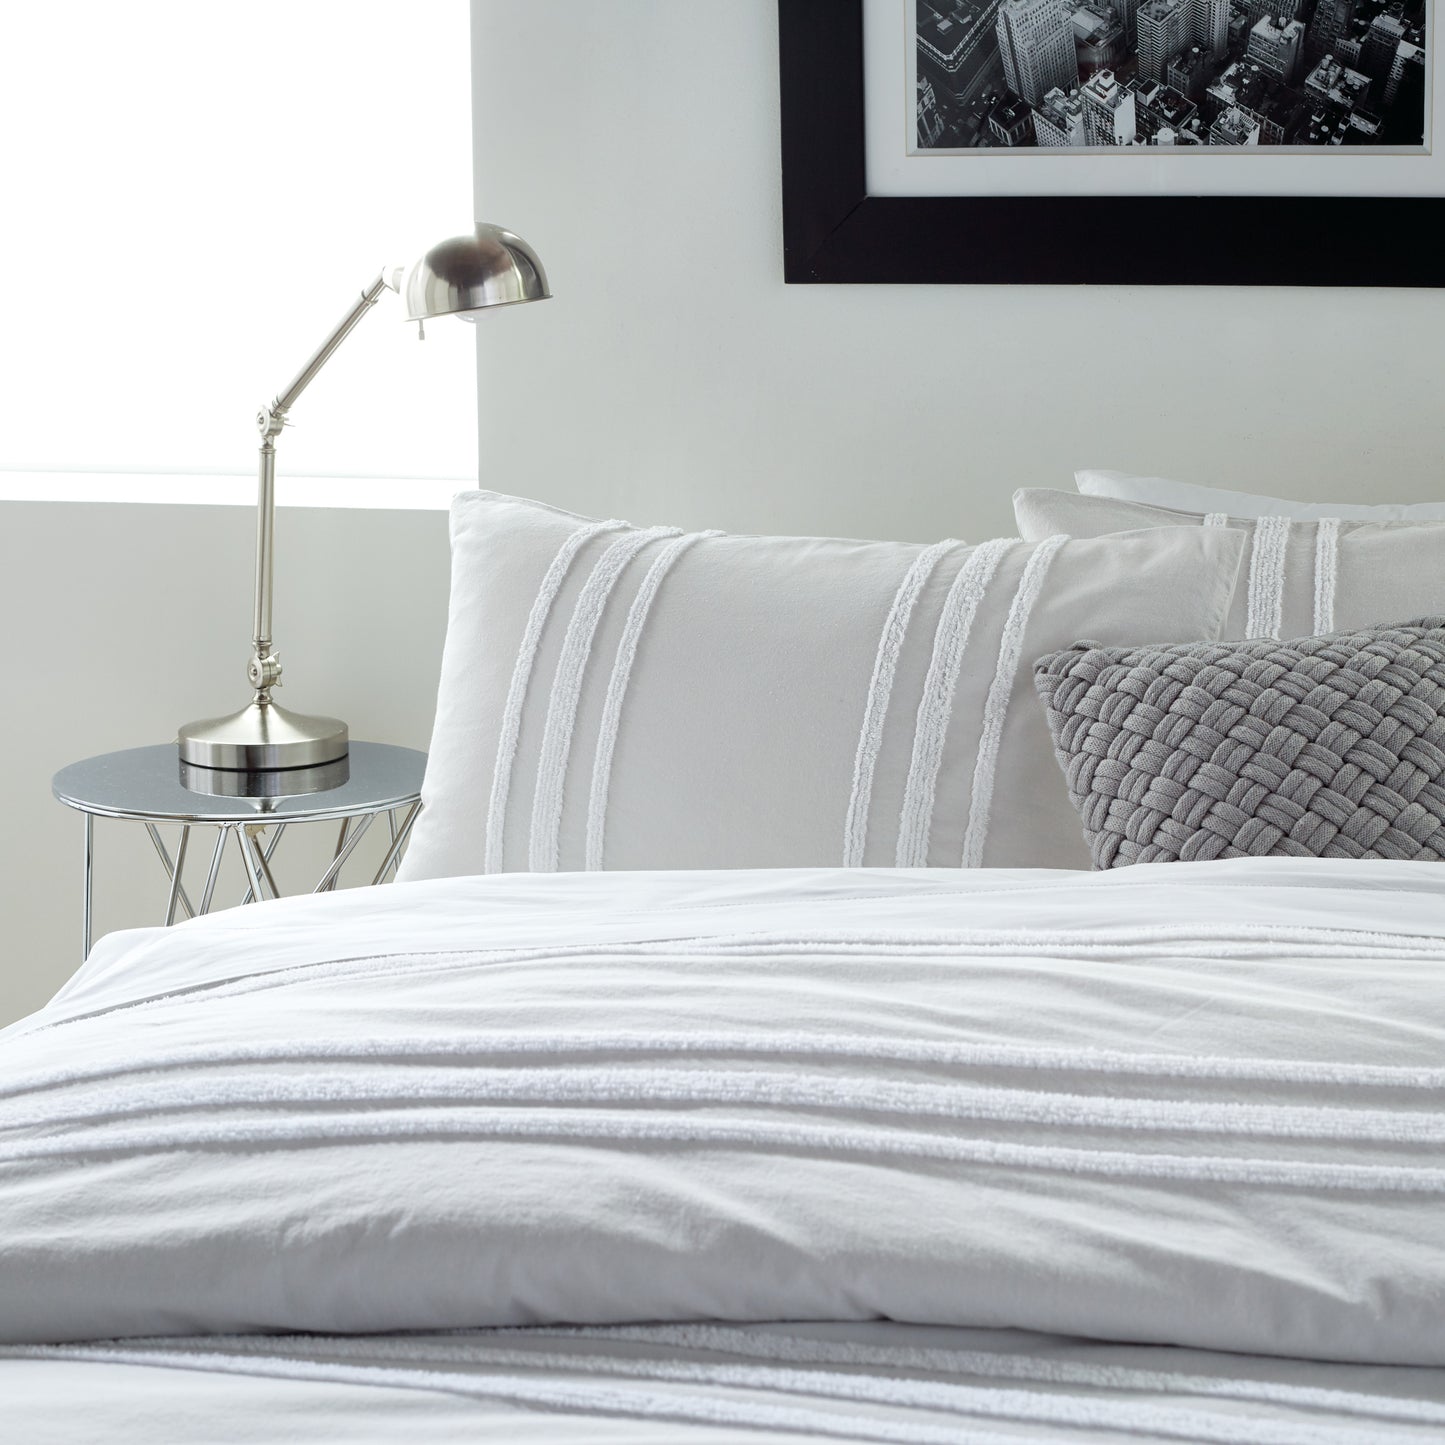 DKNY Chenille Stripe Bedding Comforter Set